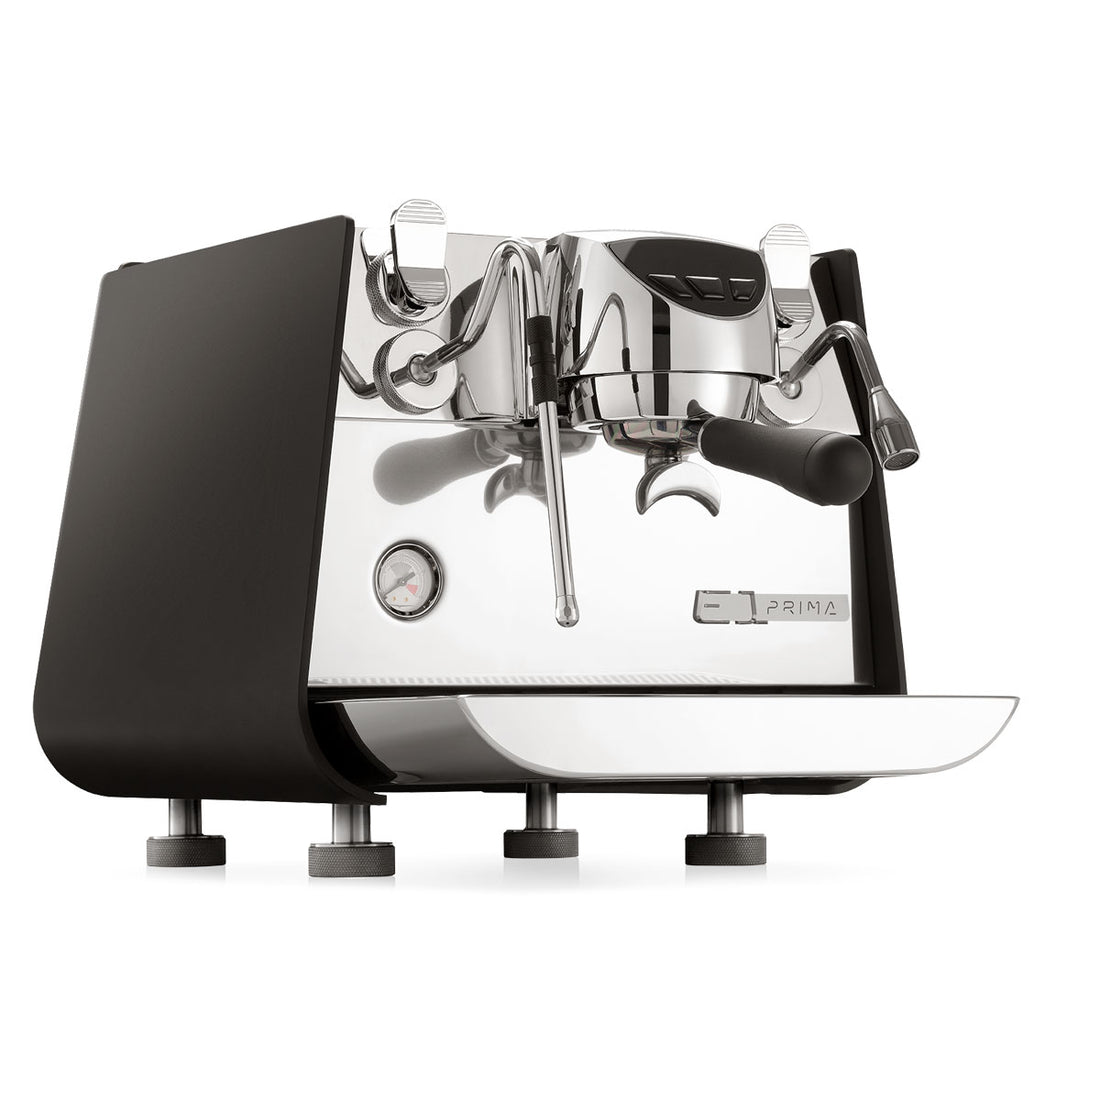 Victoria Arduino Eagle One Prima Espresso Machine - Matte Black